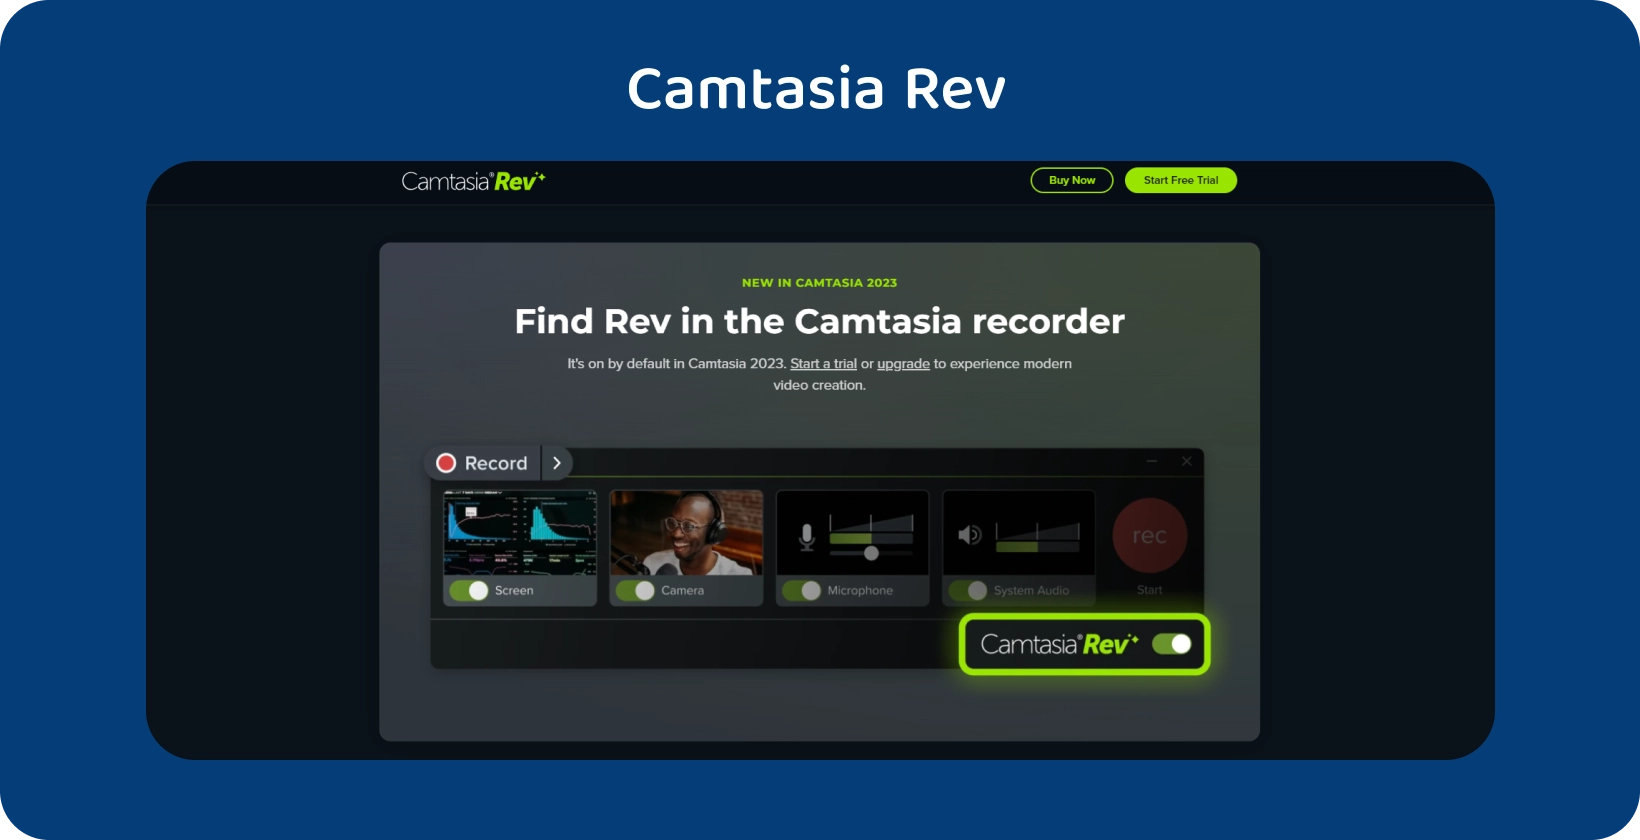 Банер домашньої сторінки Camtasia Rev, що демонструє інструменти для створення відео за допомогою AI для покращеного виробництва відео.